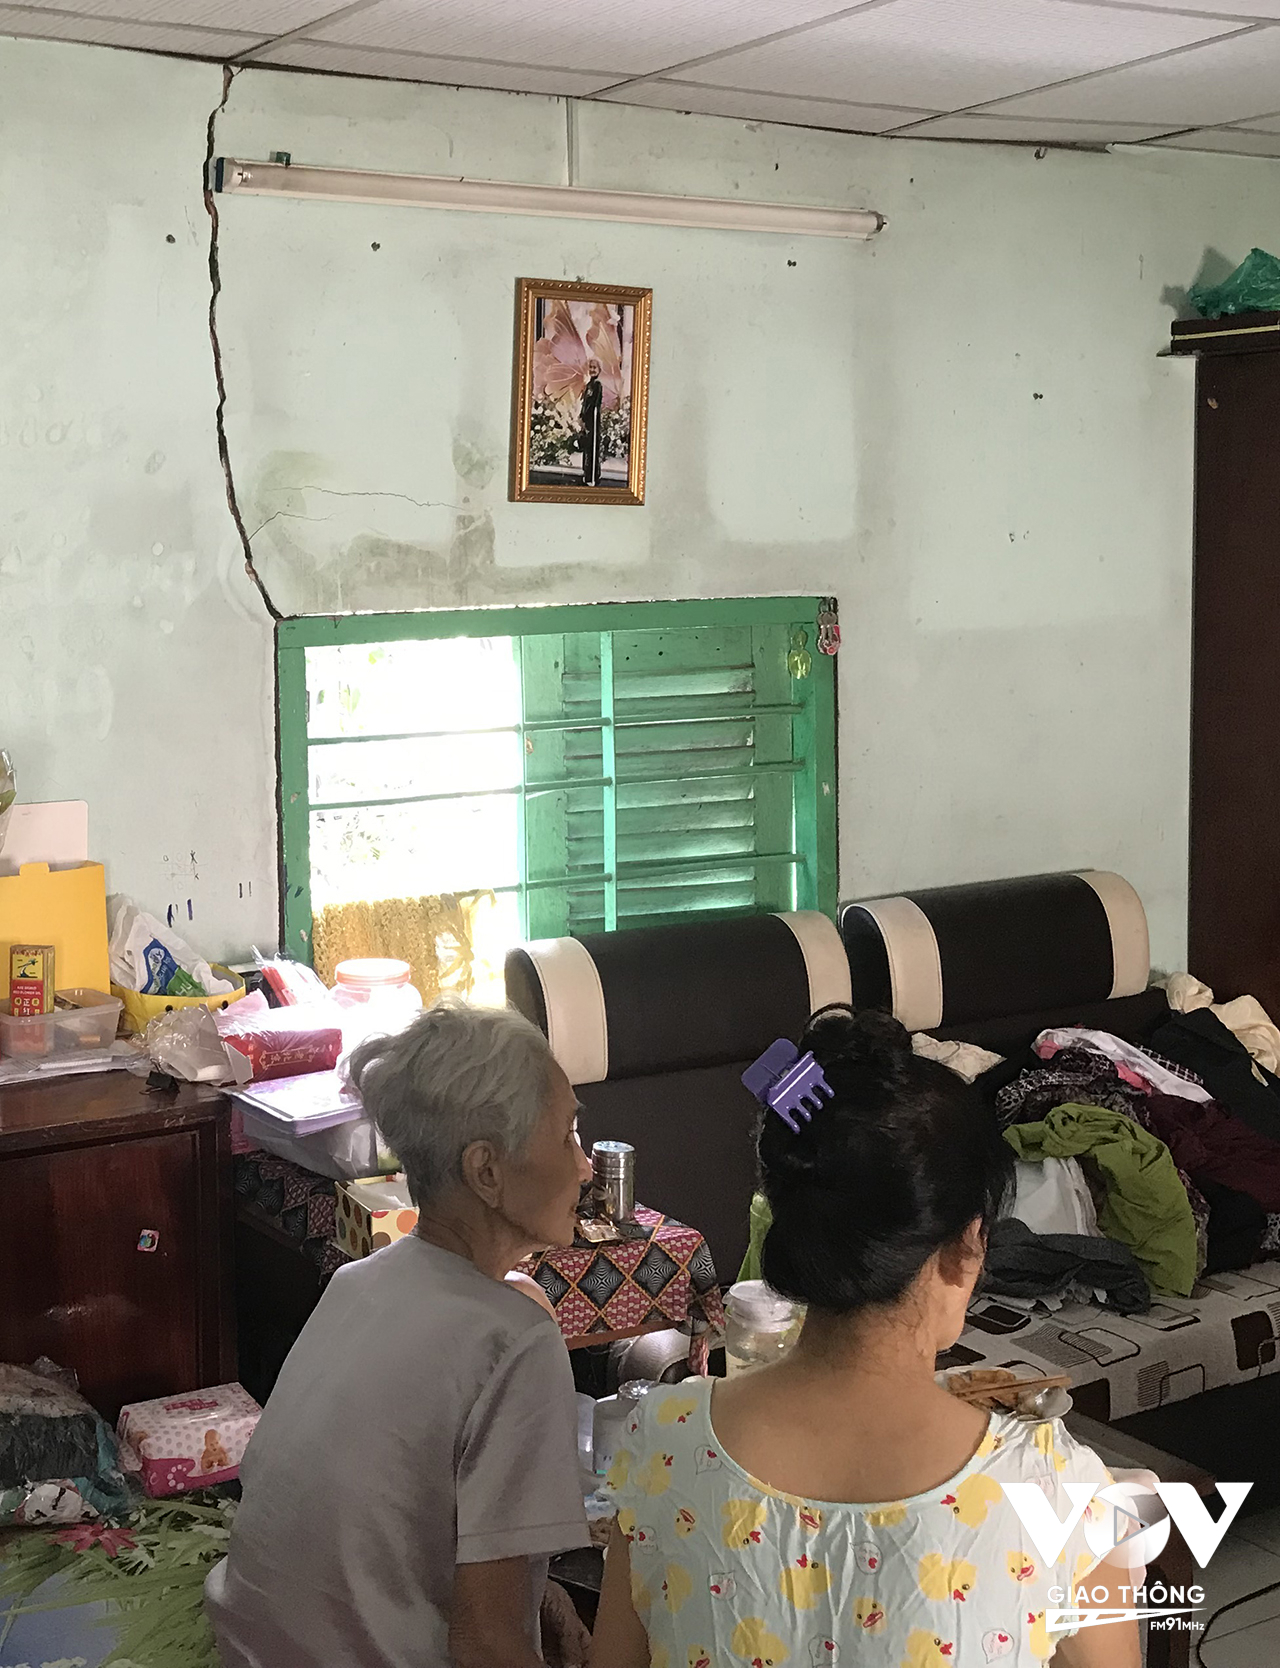 Bà Nguyễn Thị Công (88 tuổi) sống trong hẻm 886 cho biết, nhà bà xây dựng trước năm 2000, tuy không nằm trong số những hộ dân bị di dời nhưng nhà của bà cũng bị ảnh hưởng từ vụ sạt lở này, tường xuất hiện nhiều vết nứt.